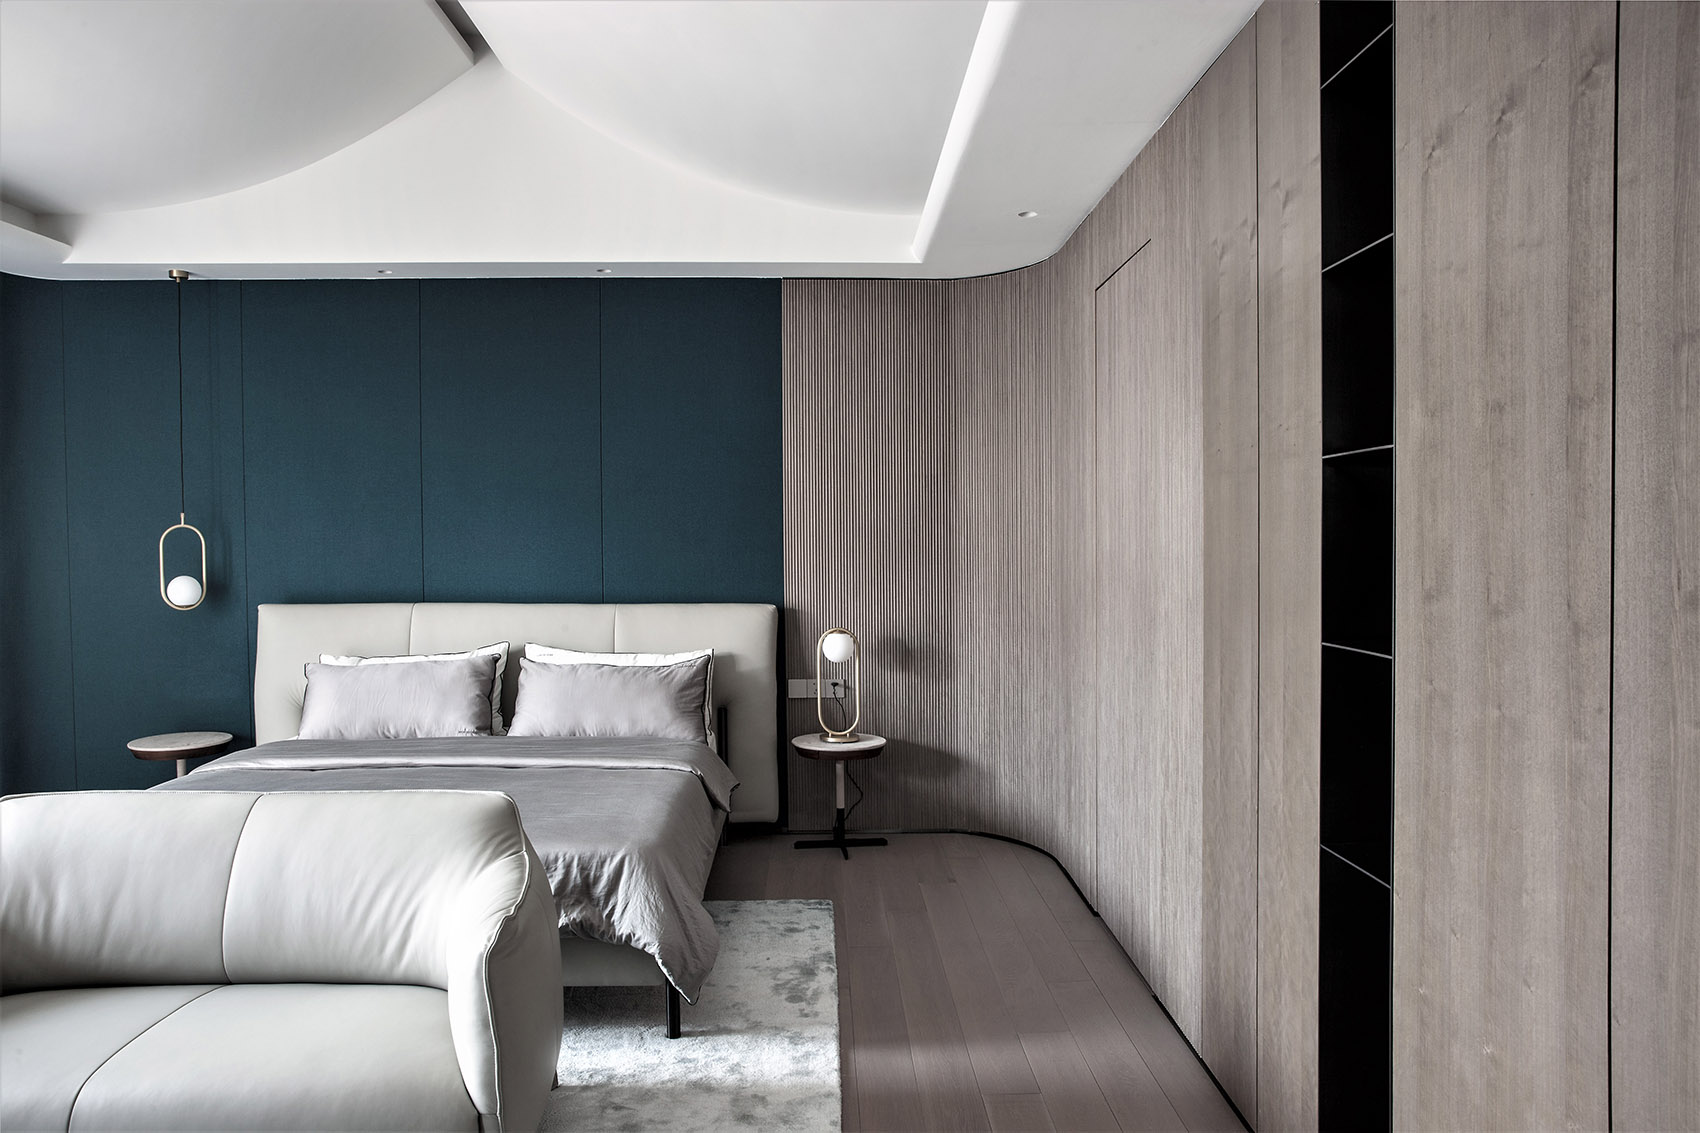 次卧背景选用大气稳重的蓝色做点缀，丰盈了空间质感，彰显出雅致的空间审美。